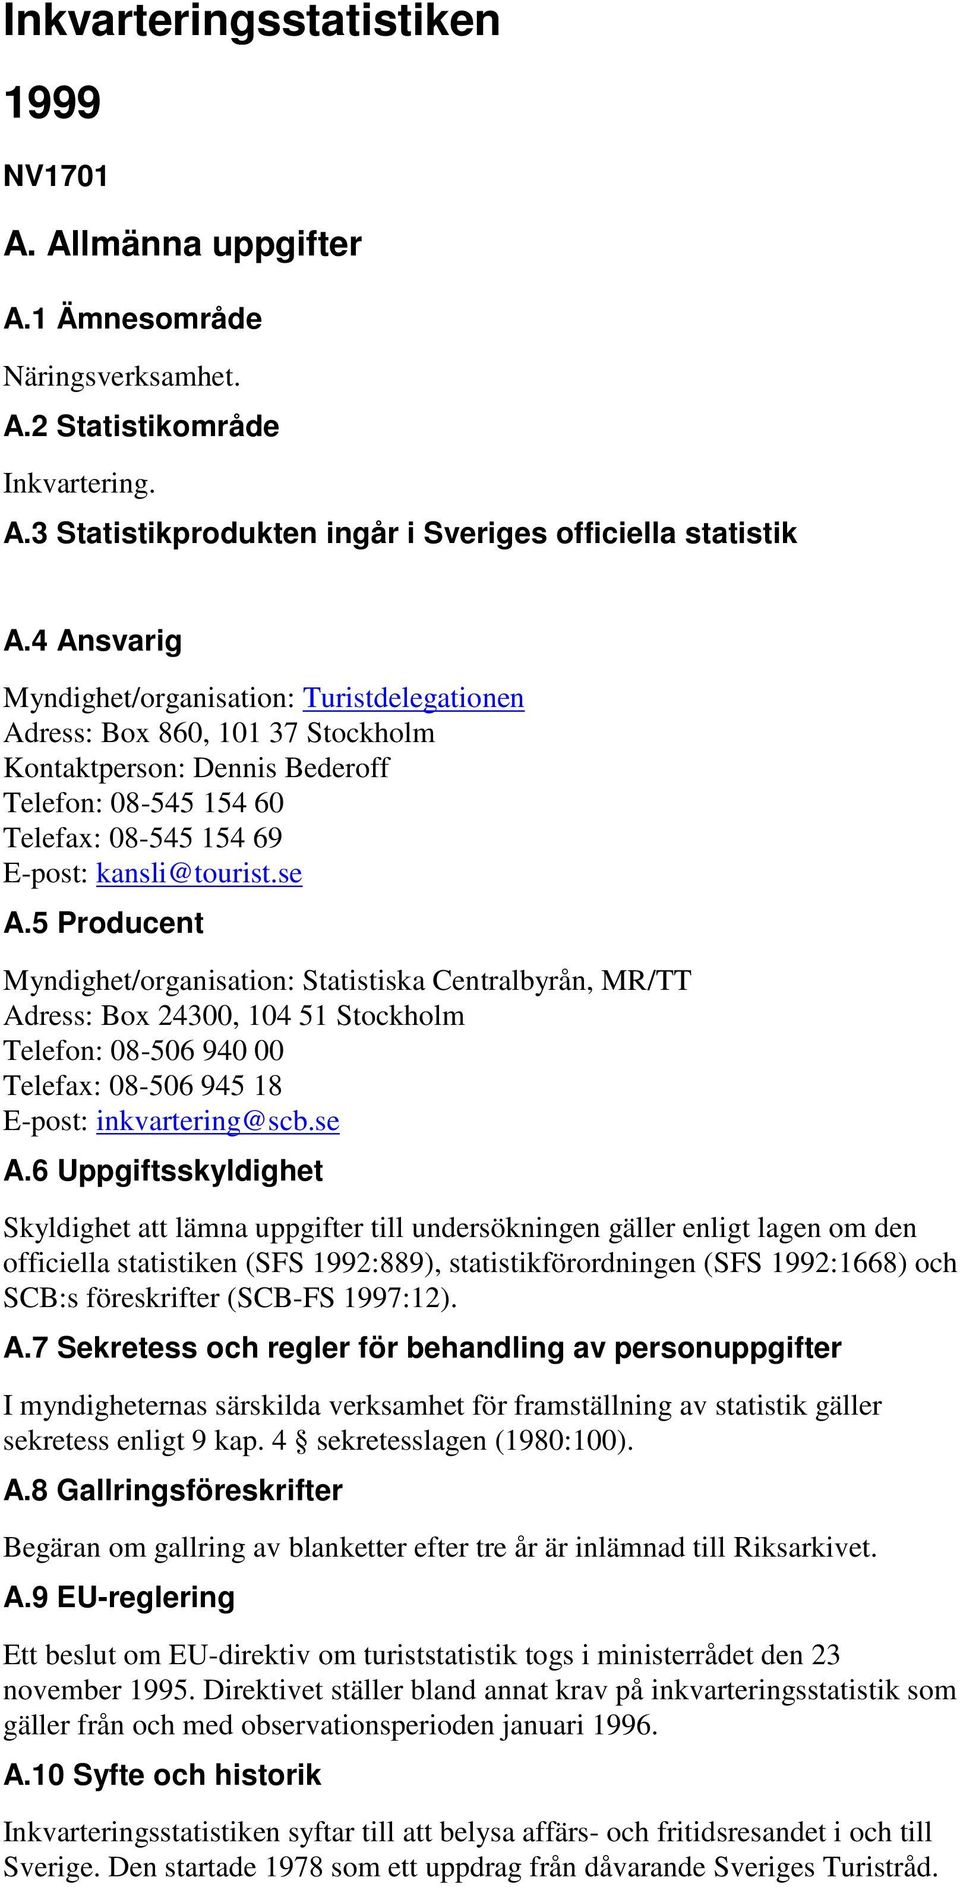 5 Producent Myndighet/organisation: Statistiska Centralbyrån, MR/TT Adress: Box 24300, 104 51 Stockholm Telefon: 08-506 940 00 Telefax: 08-506 945 18 E-post: inkvartering@scb.se A.